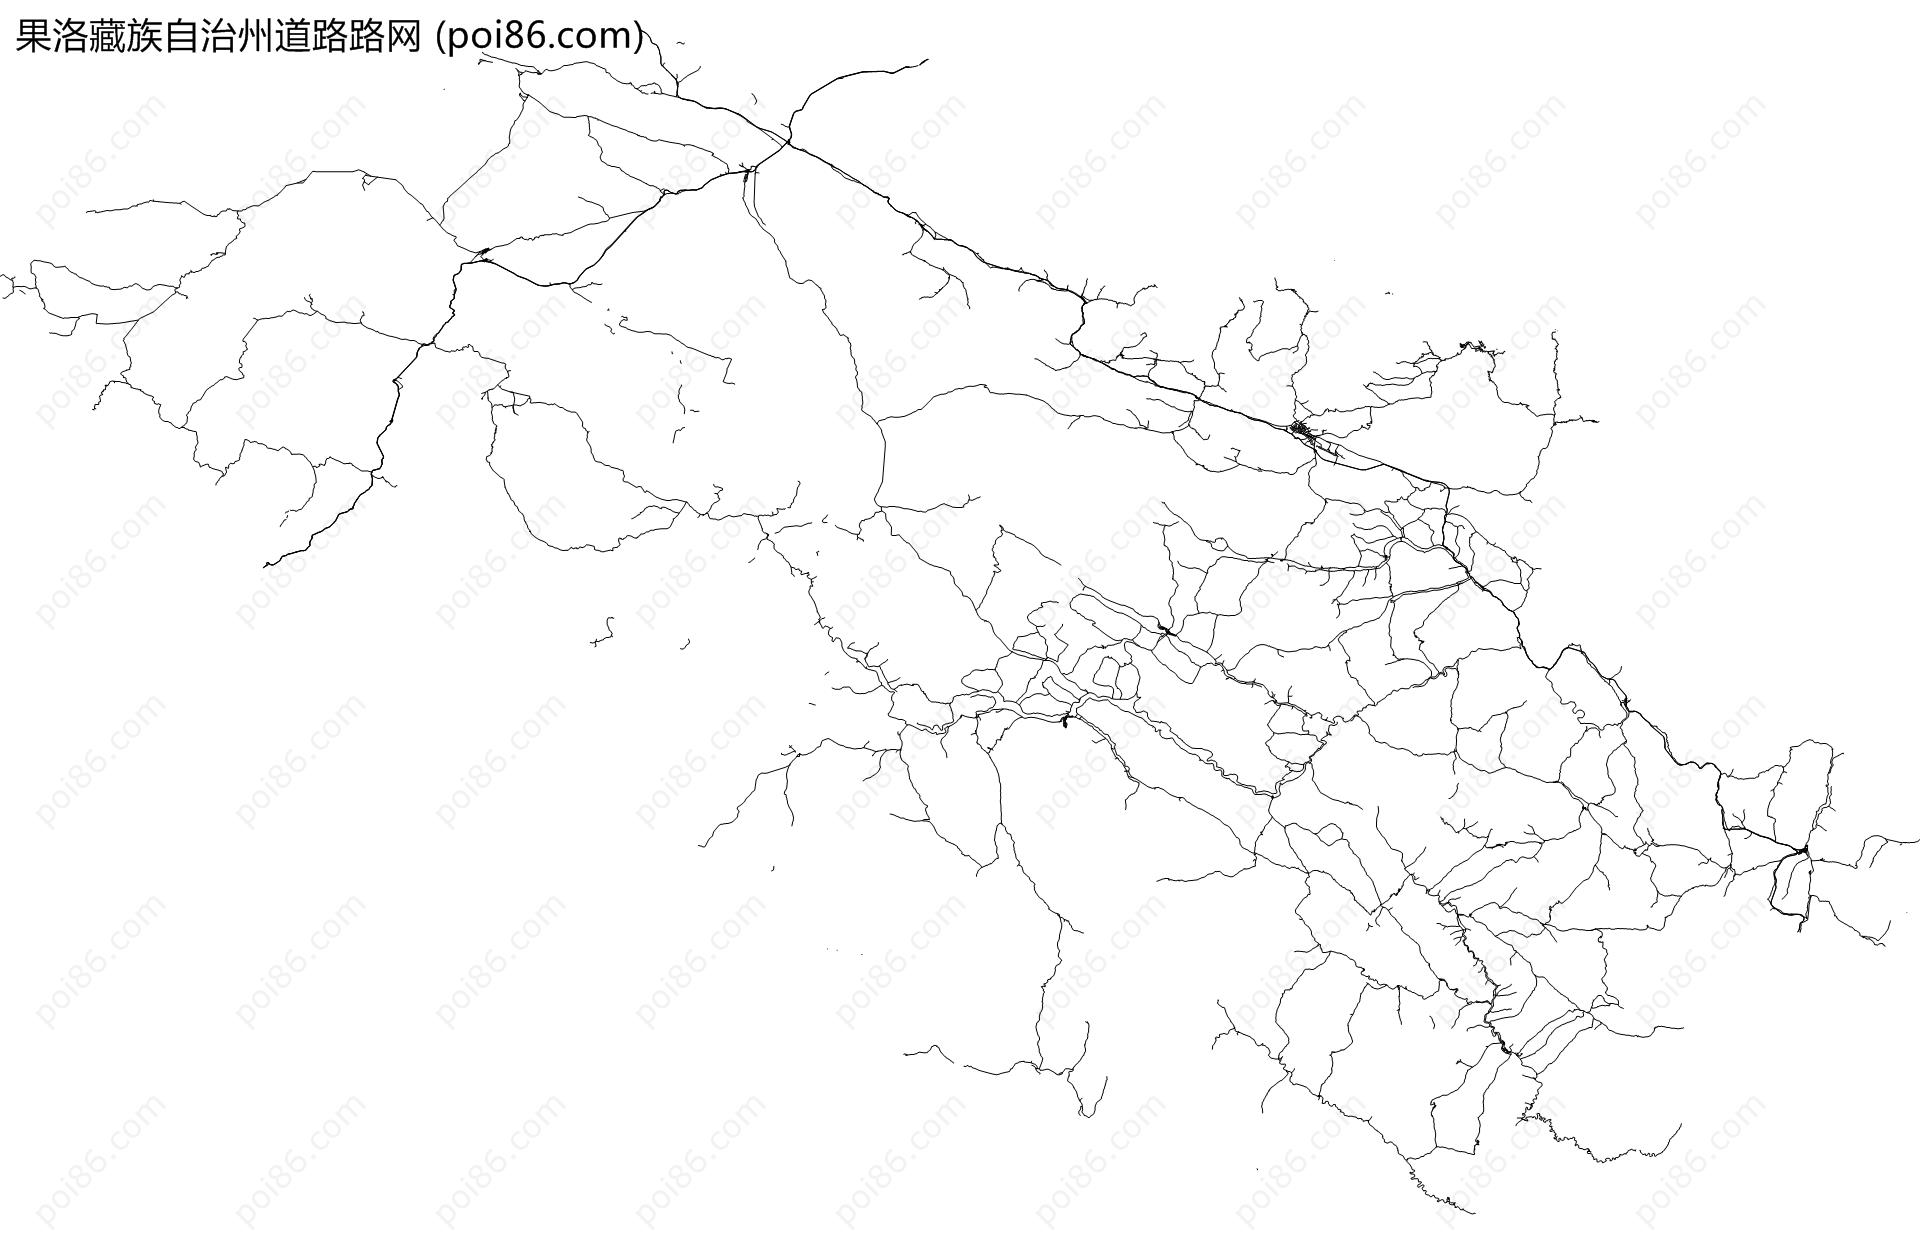 果洛藏族自治州道路路网地图